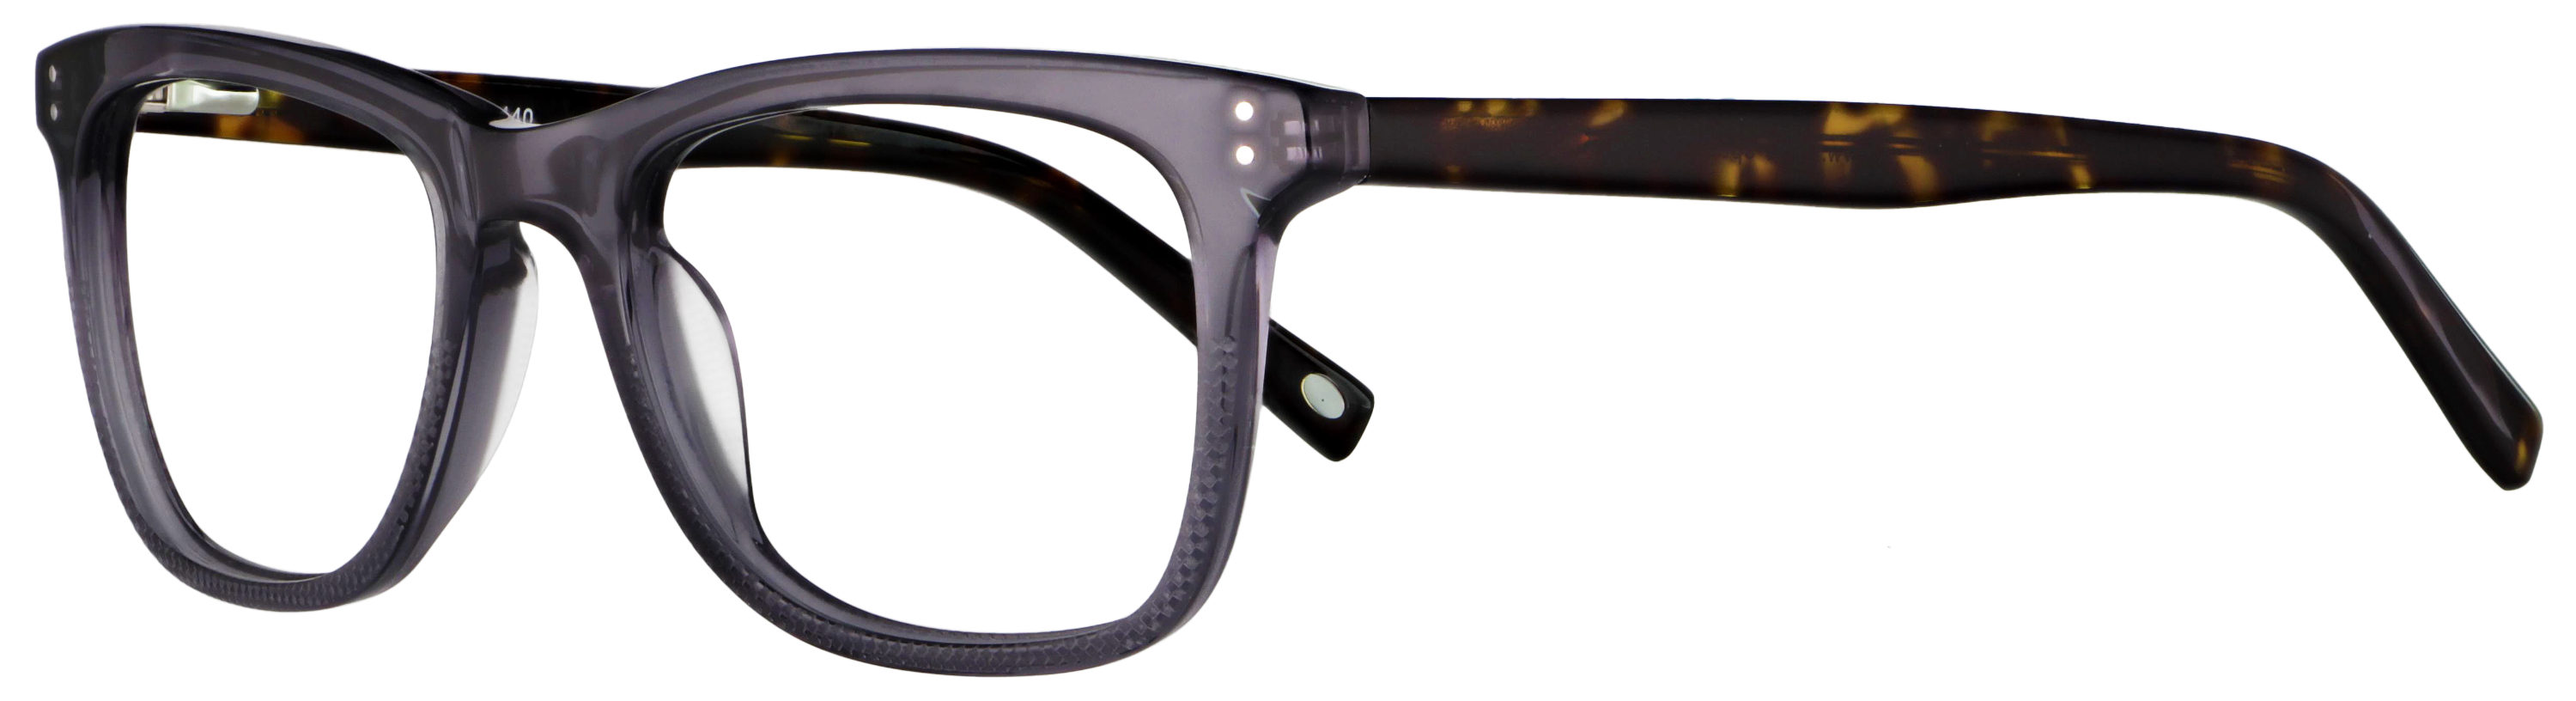 Das Bild zeigt die Korrektionsbrille 140071 von der Marke Abele Optik in grau transparent.